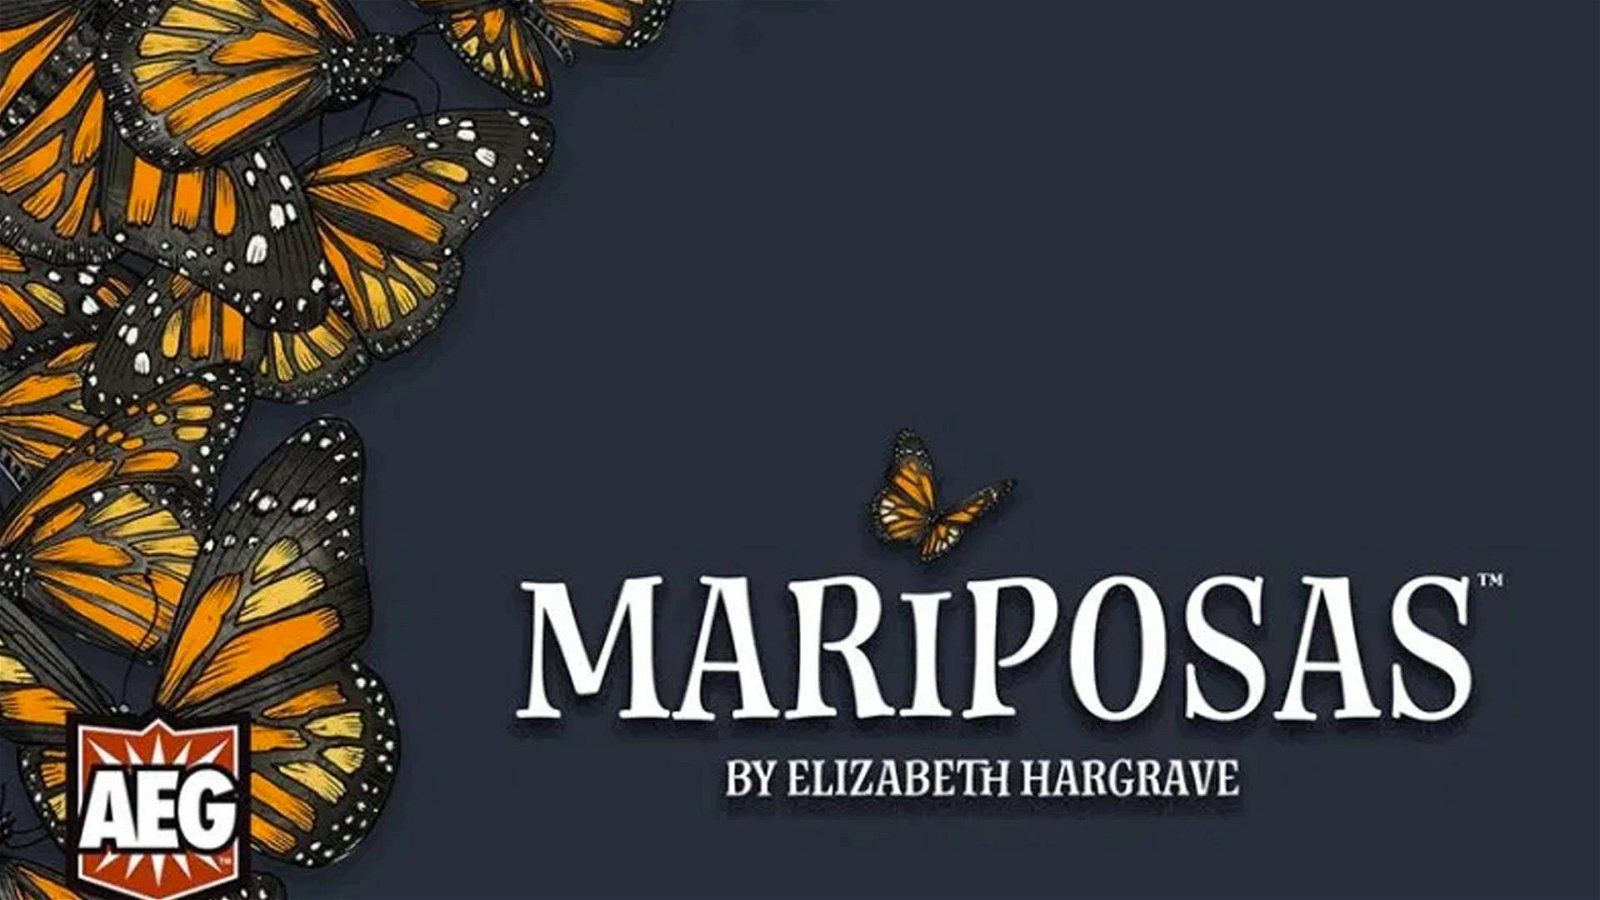 Immagine di Mariposas, da AEG in arrivo il nuovo gioco di Elizabeth Hargrave